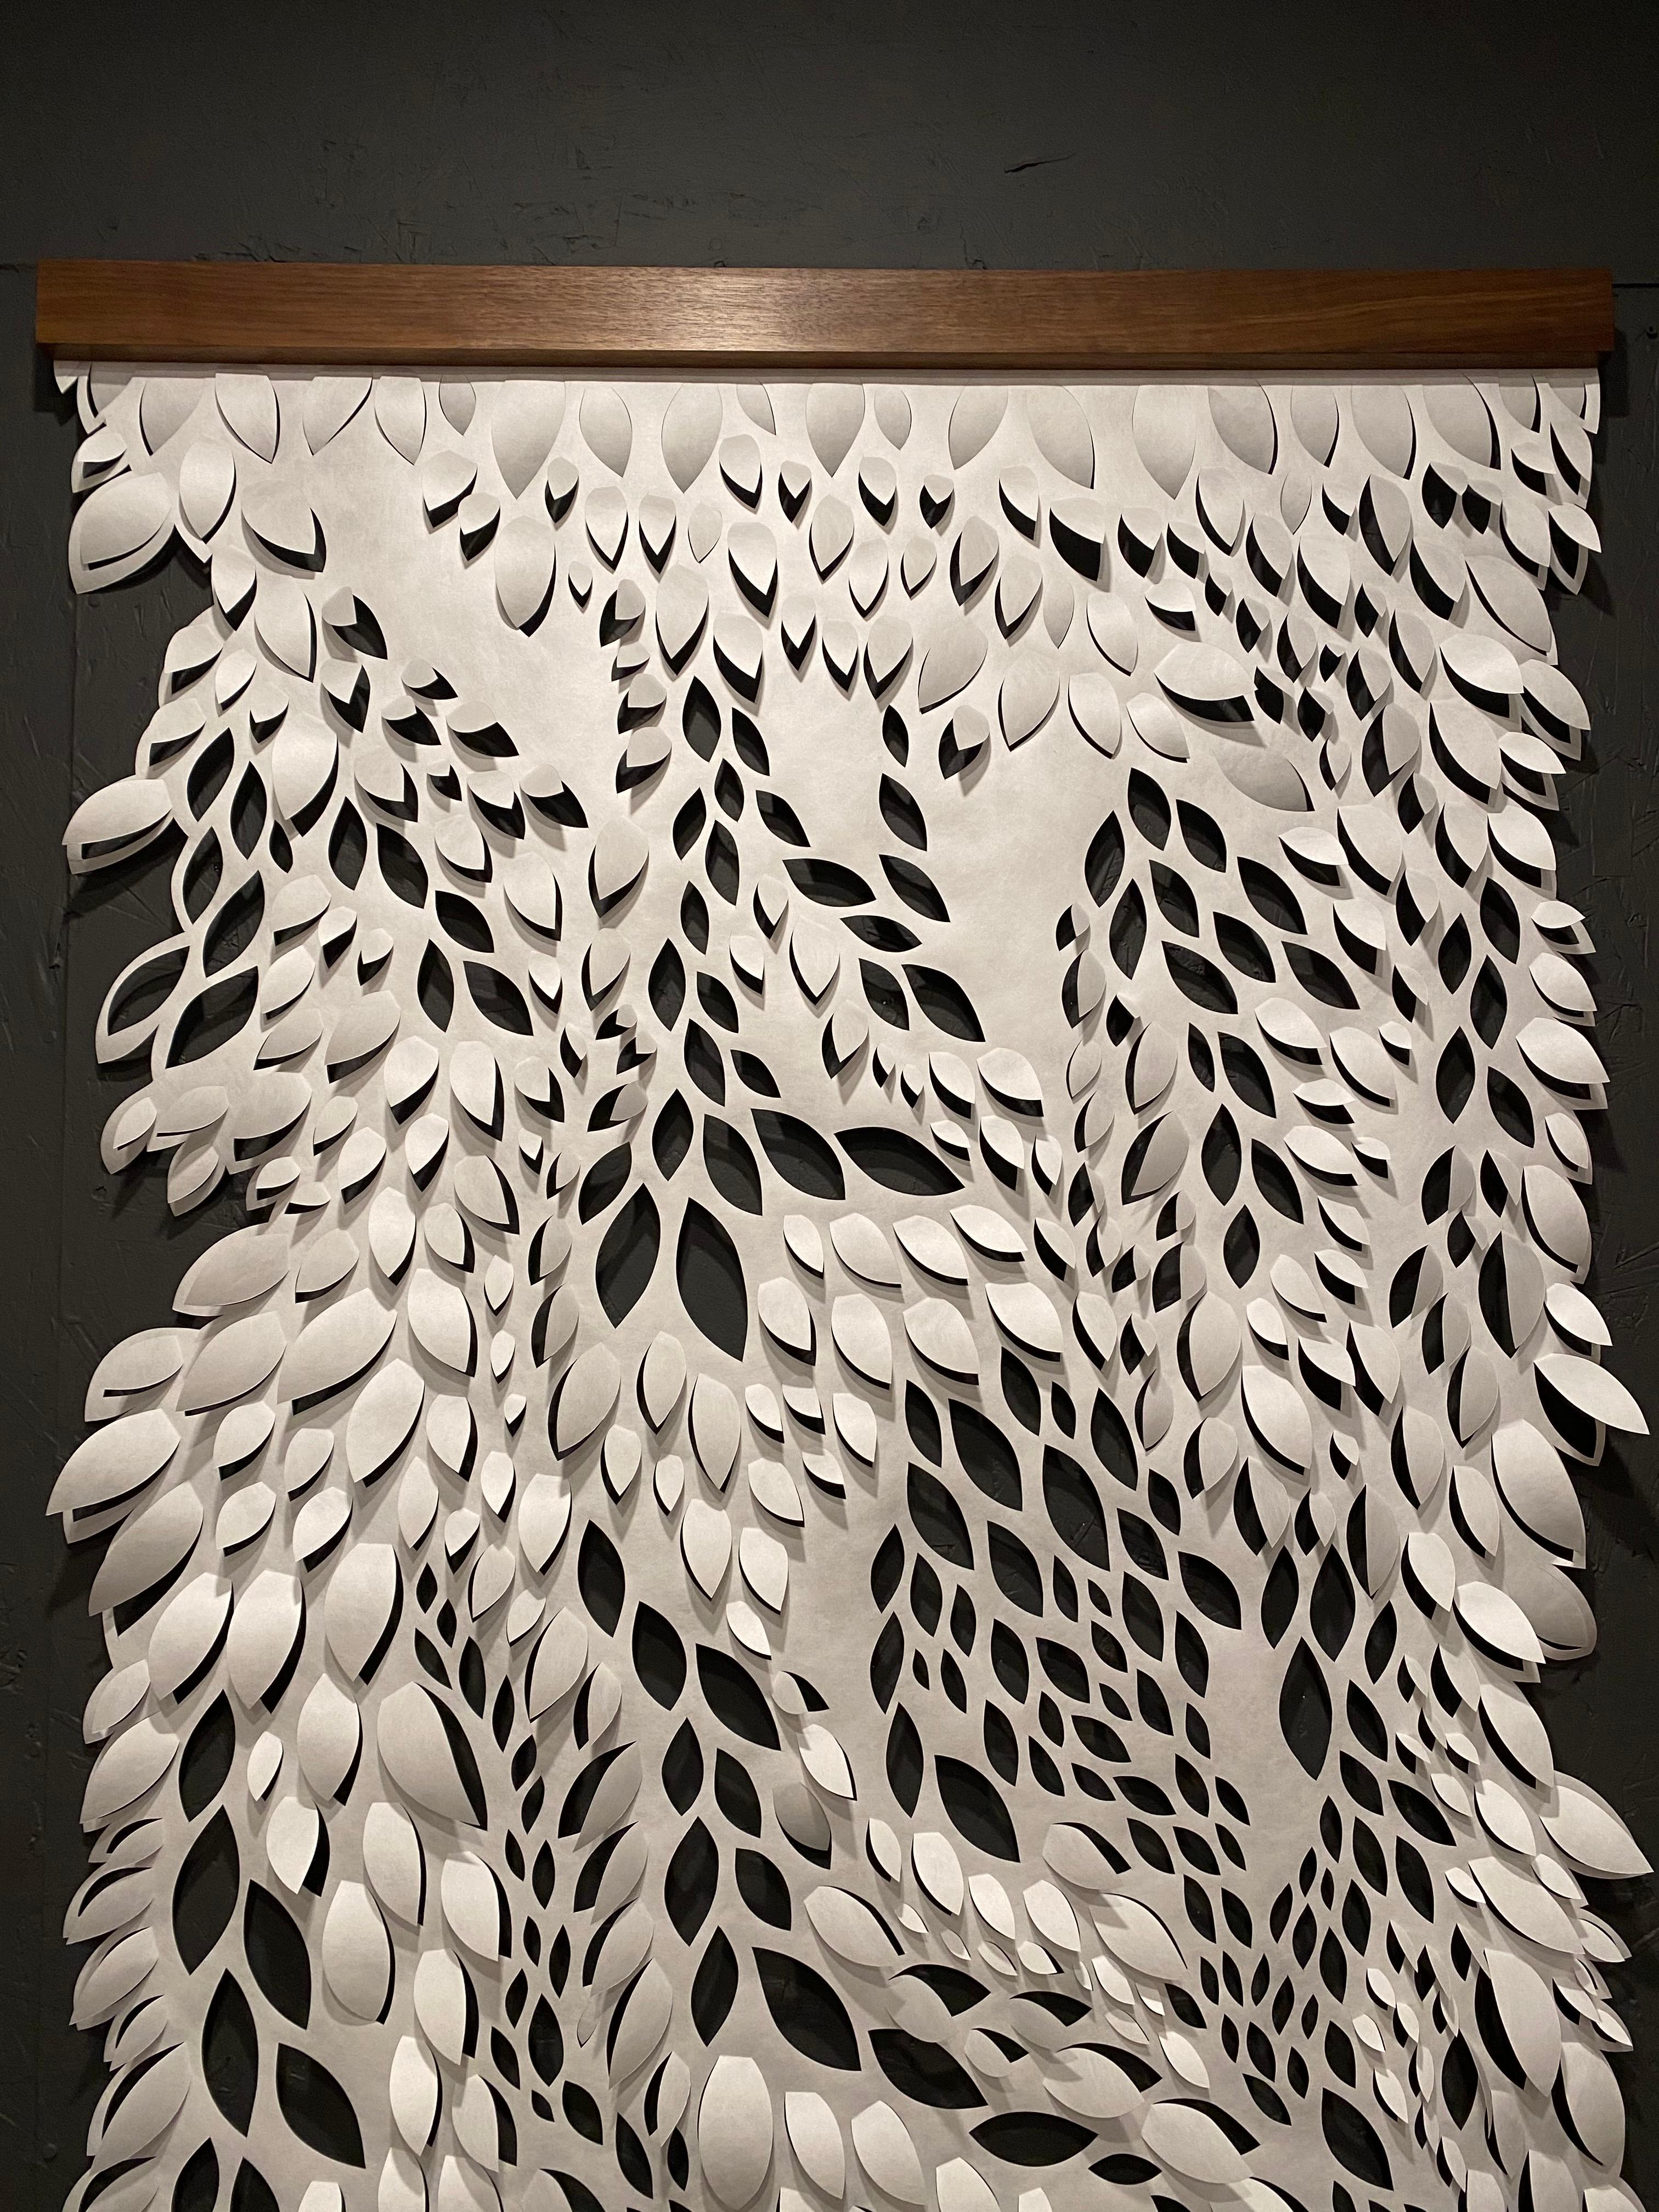 Summer J. Hart Abstract Sculpture - Hand-cut Paper Scroll, Sculptural Wall Hangings 60x36